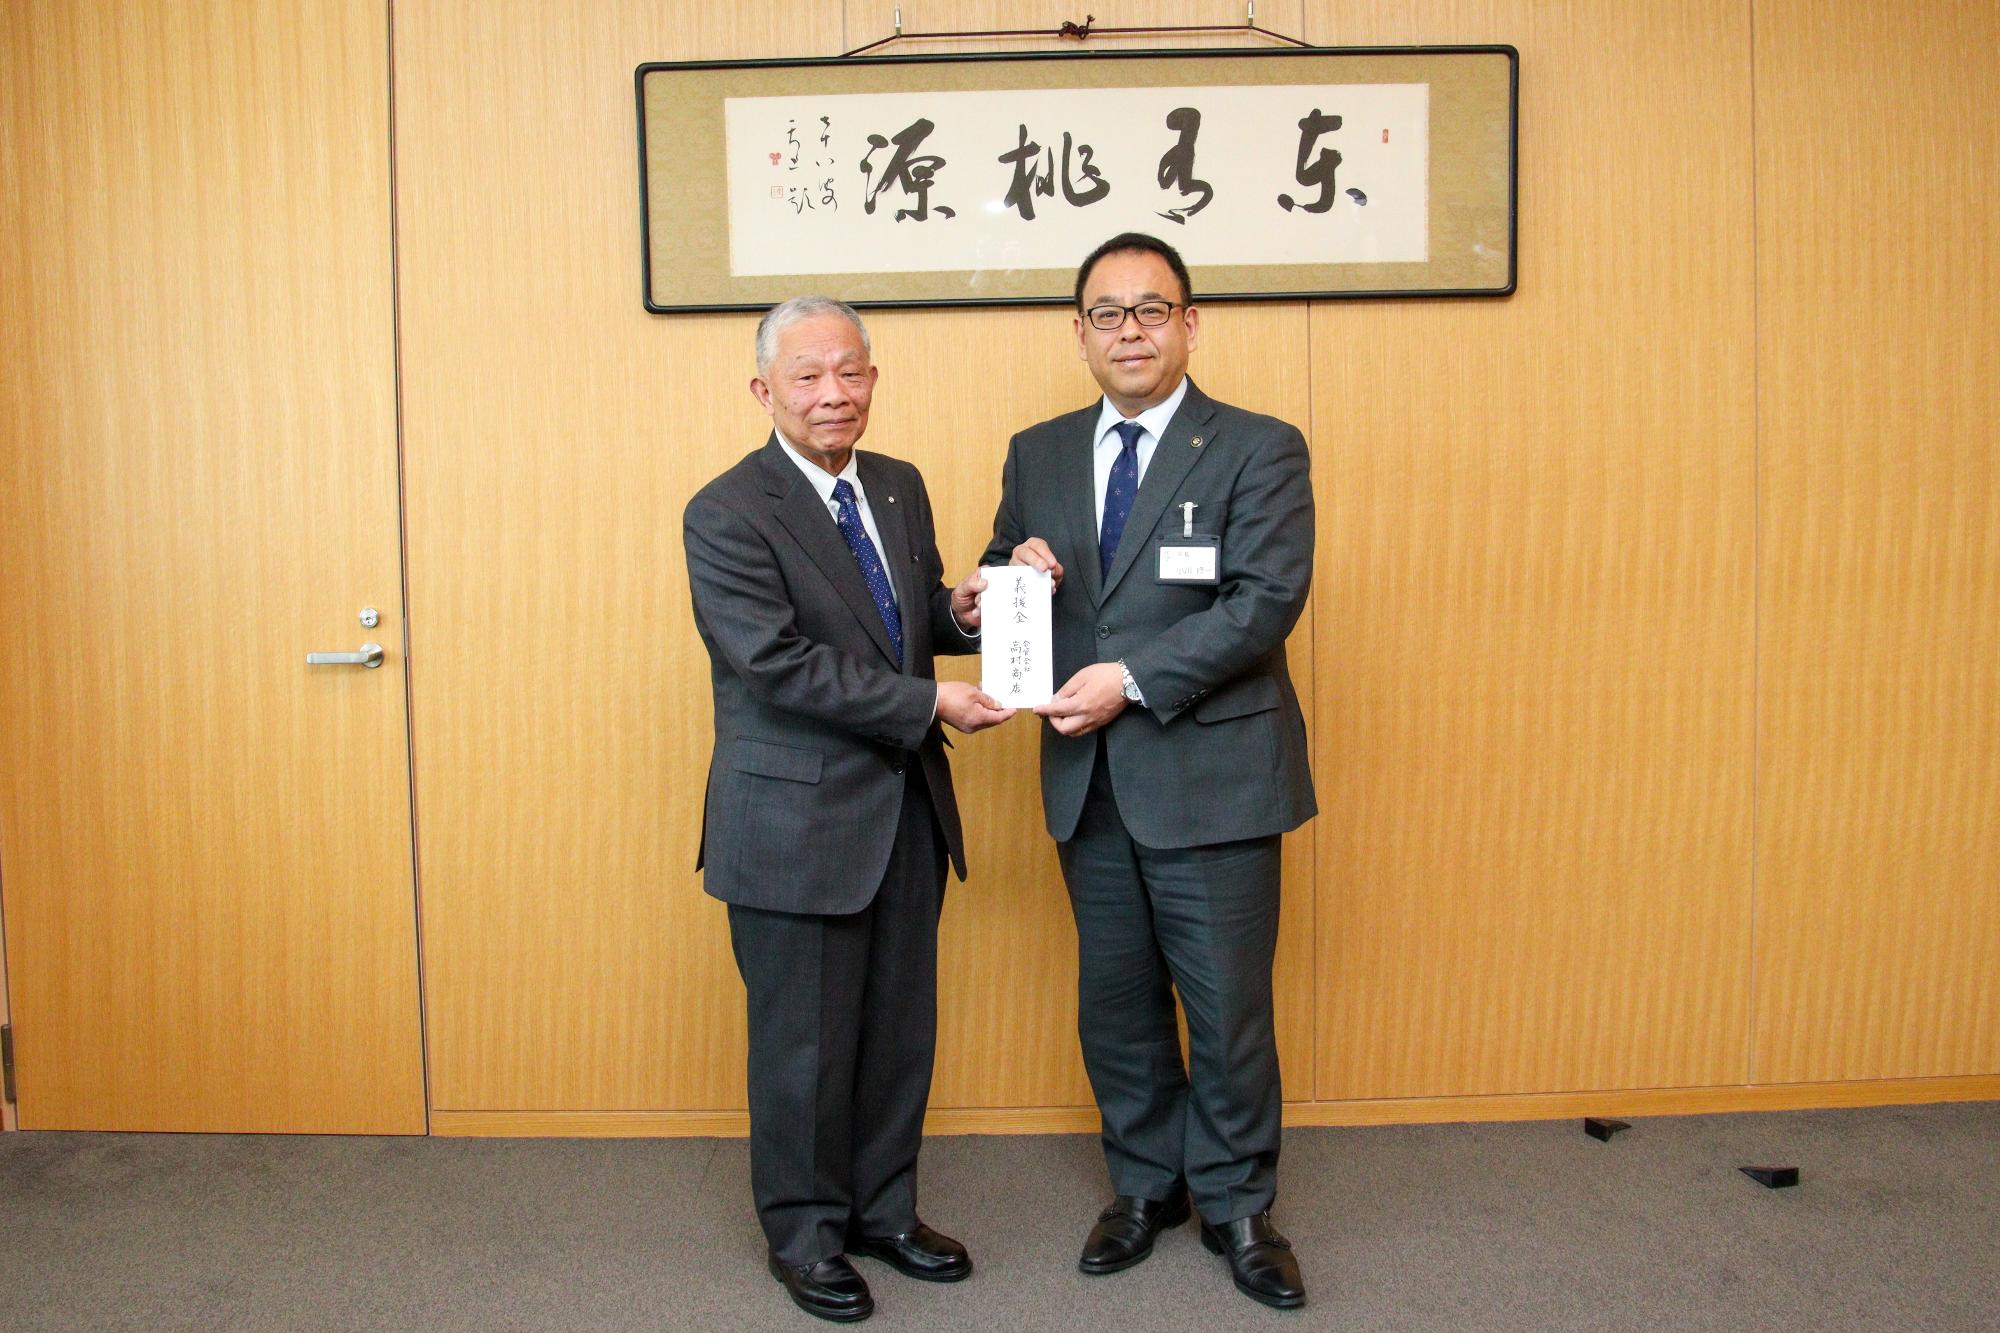 小川市長と高村代表取締役が義援金を持っている写真。右に小川市長、左に高村代表取締役。